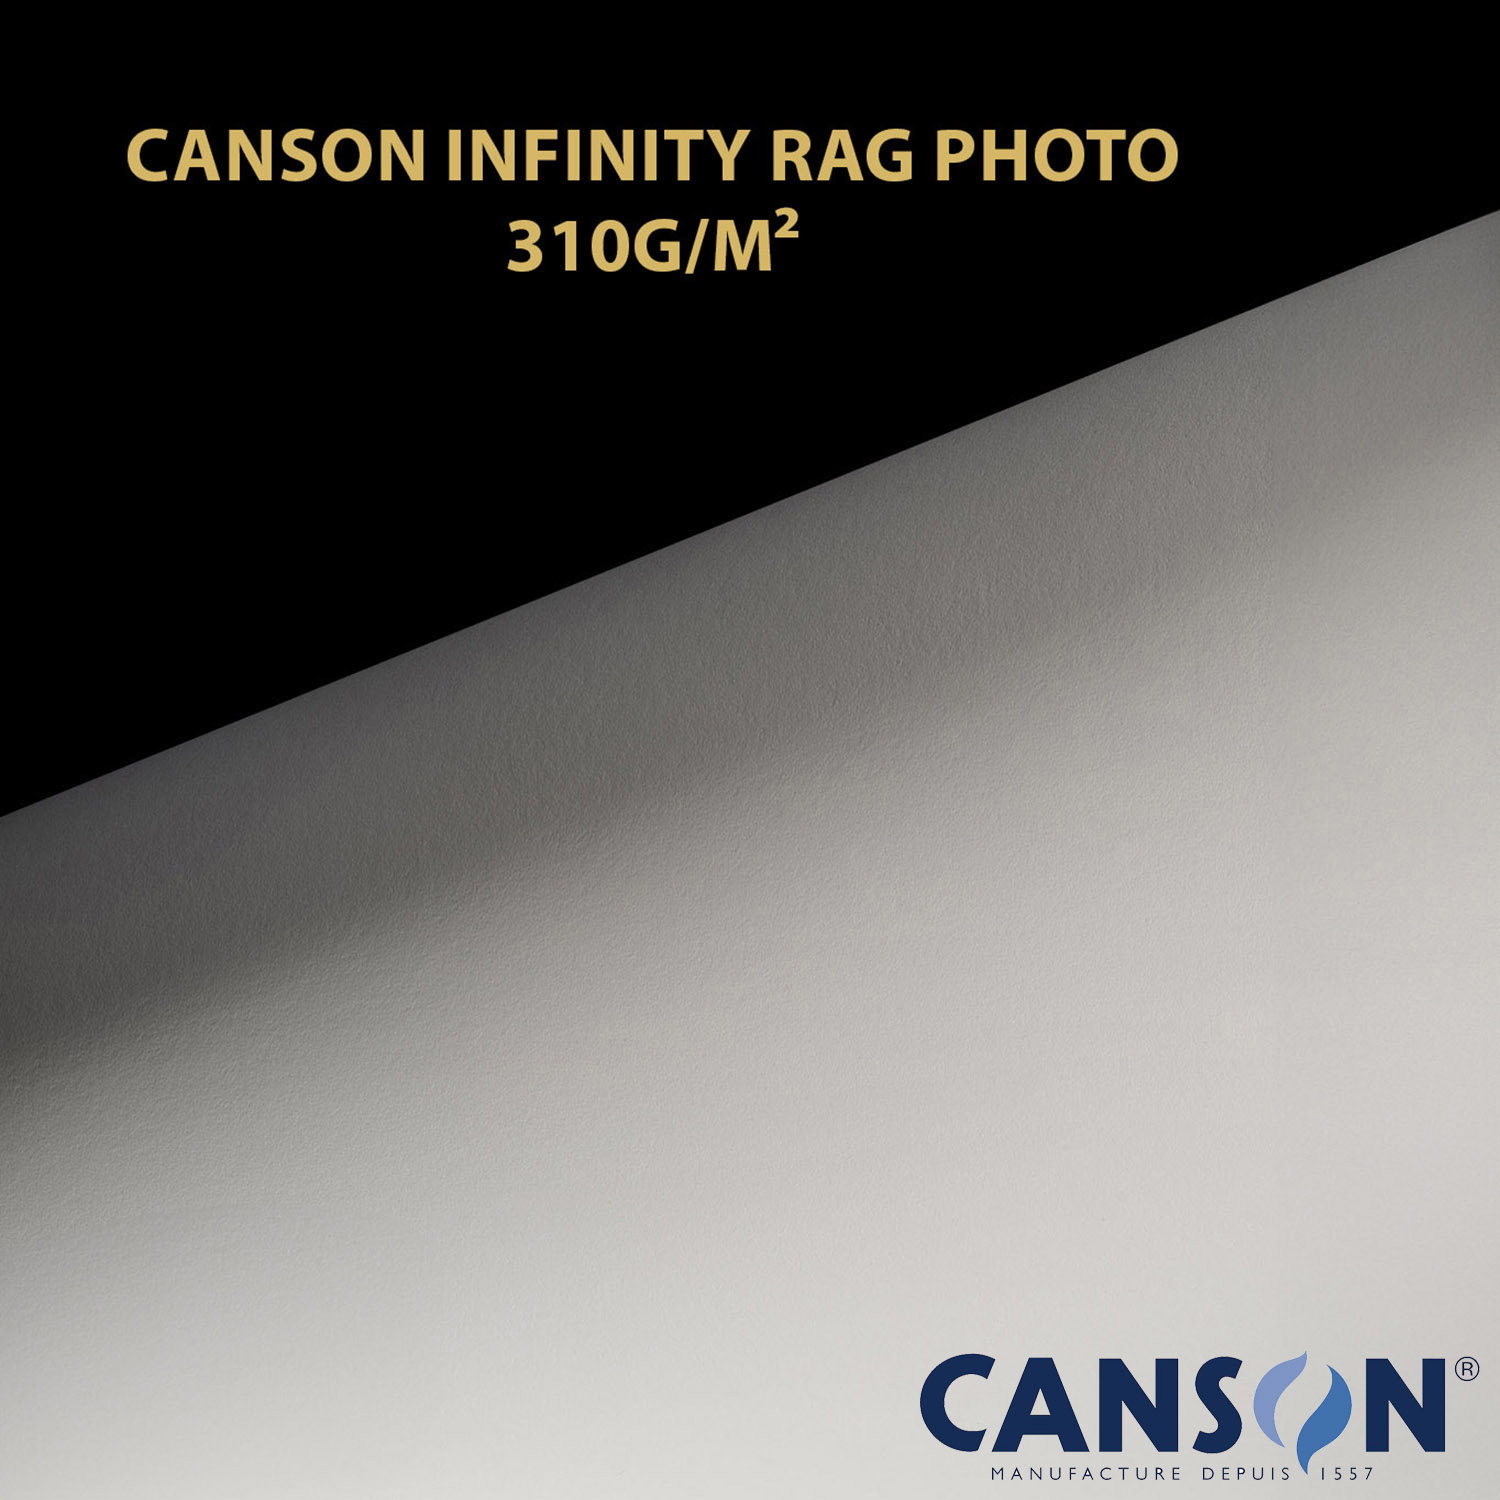 Impression et tirage Fineart pigmentaire sur papier Canson Infinity Rag Photo 310 à Montpellier